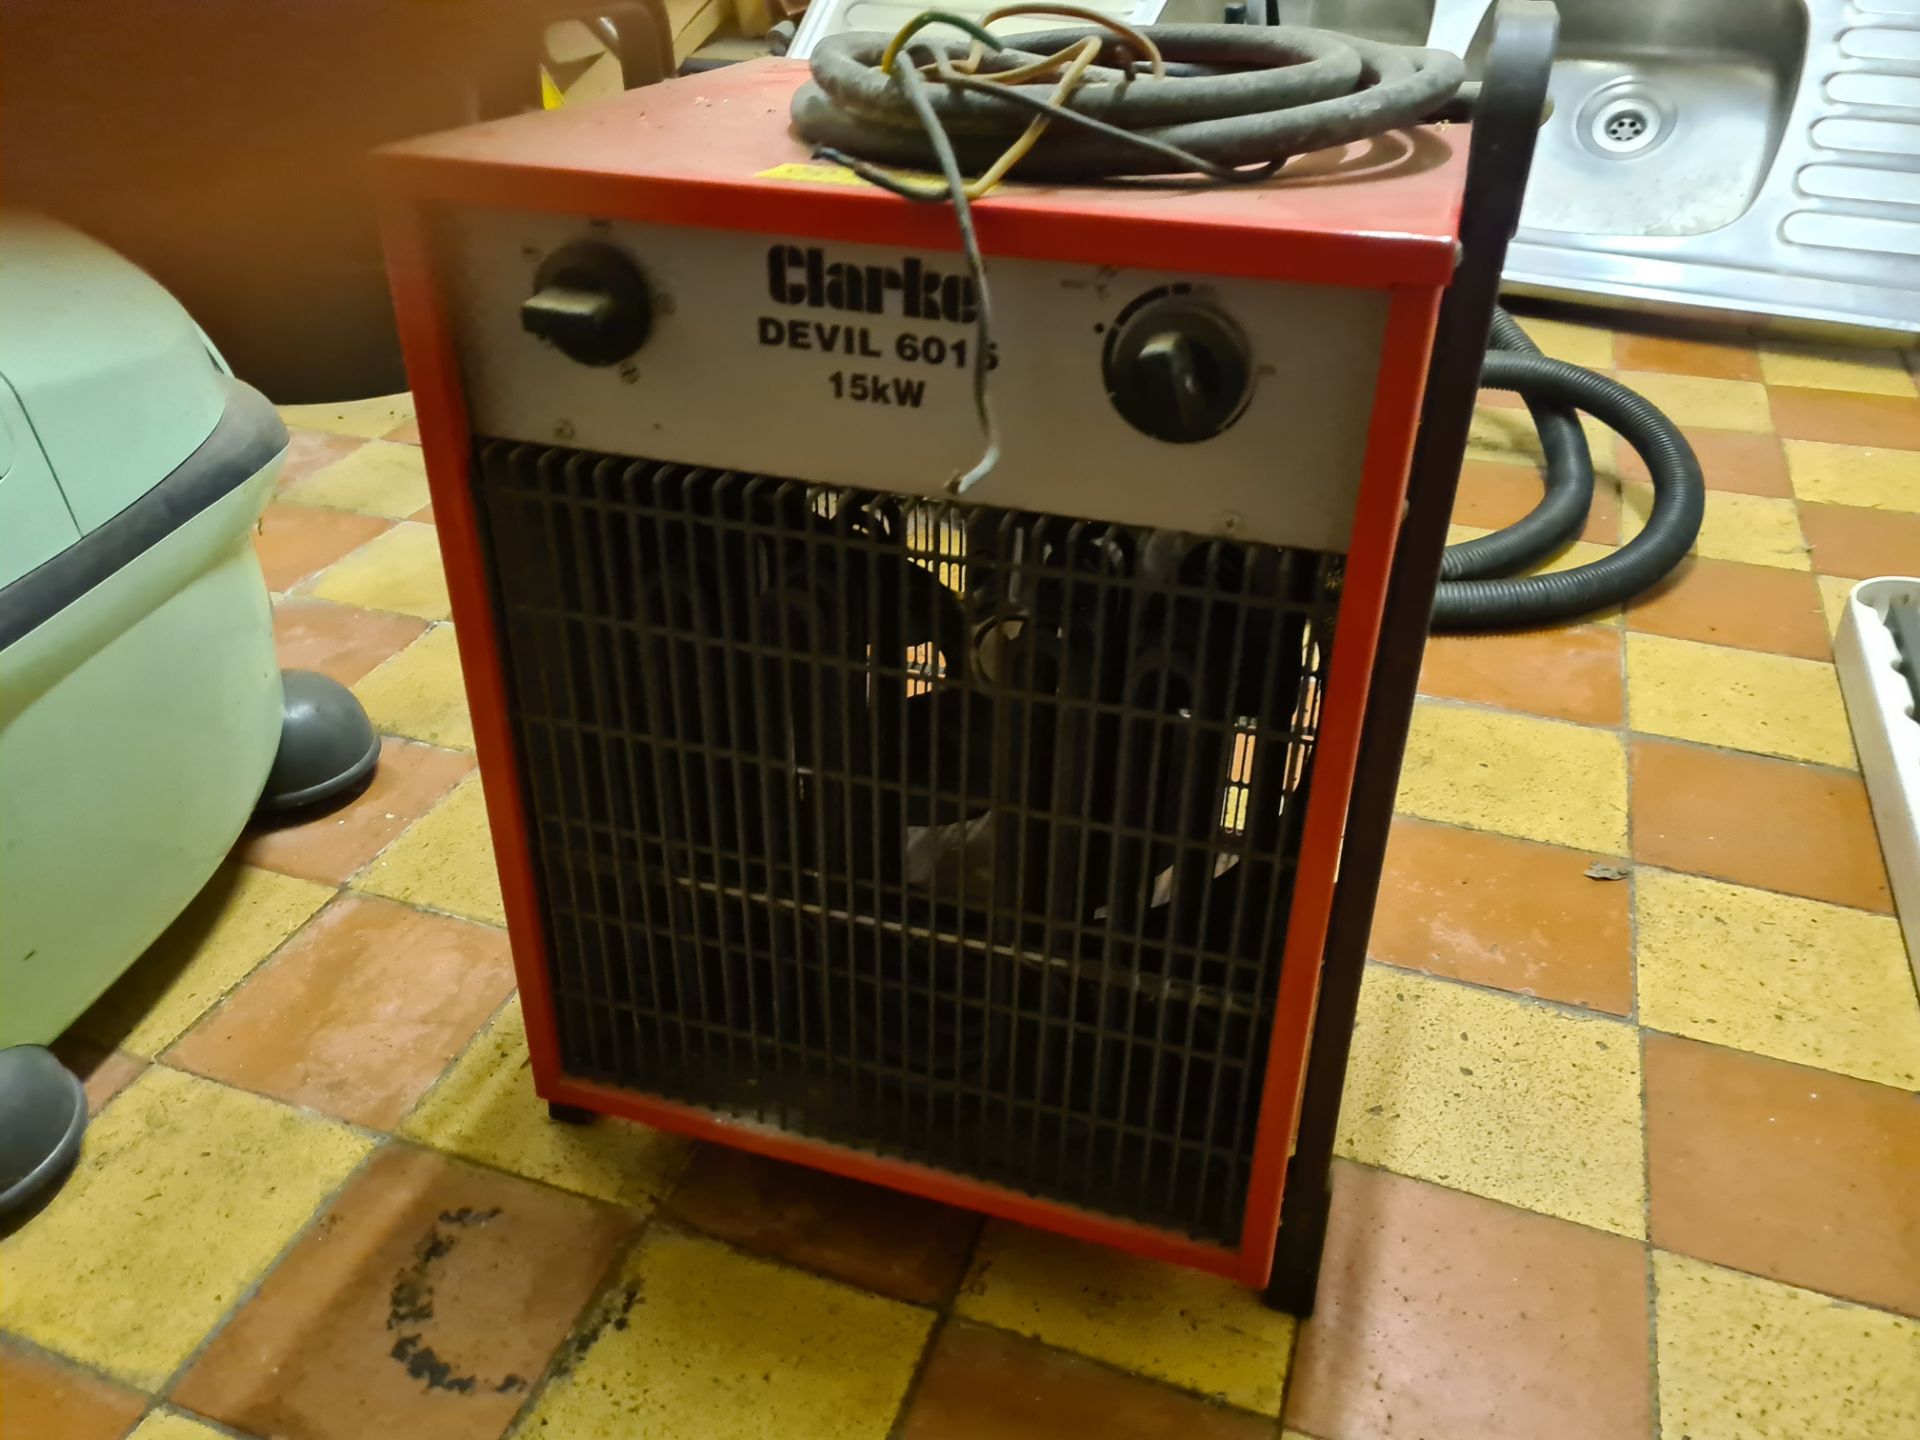 Clarke Devil 15Kw Heater